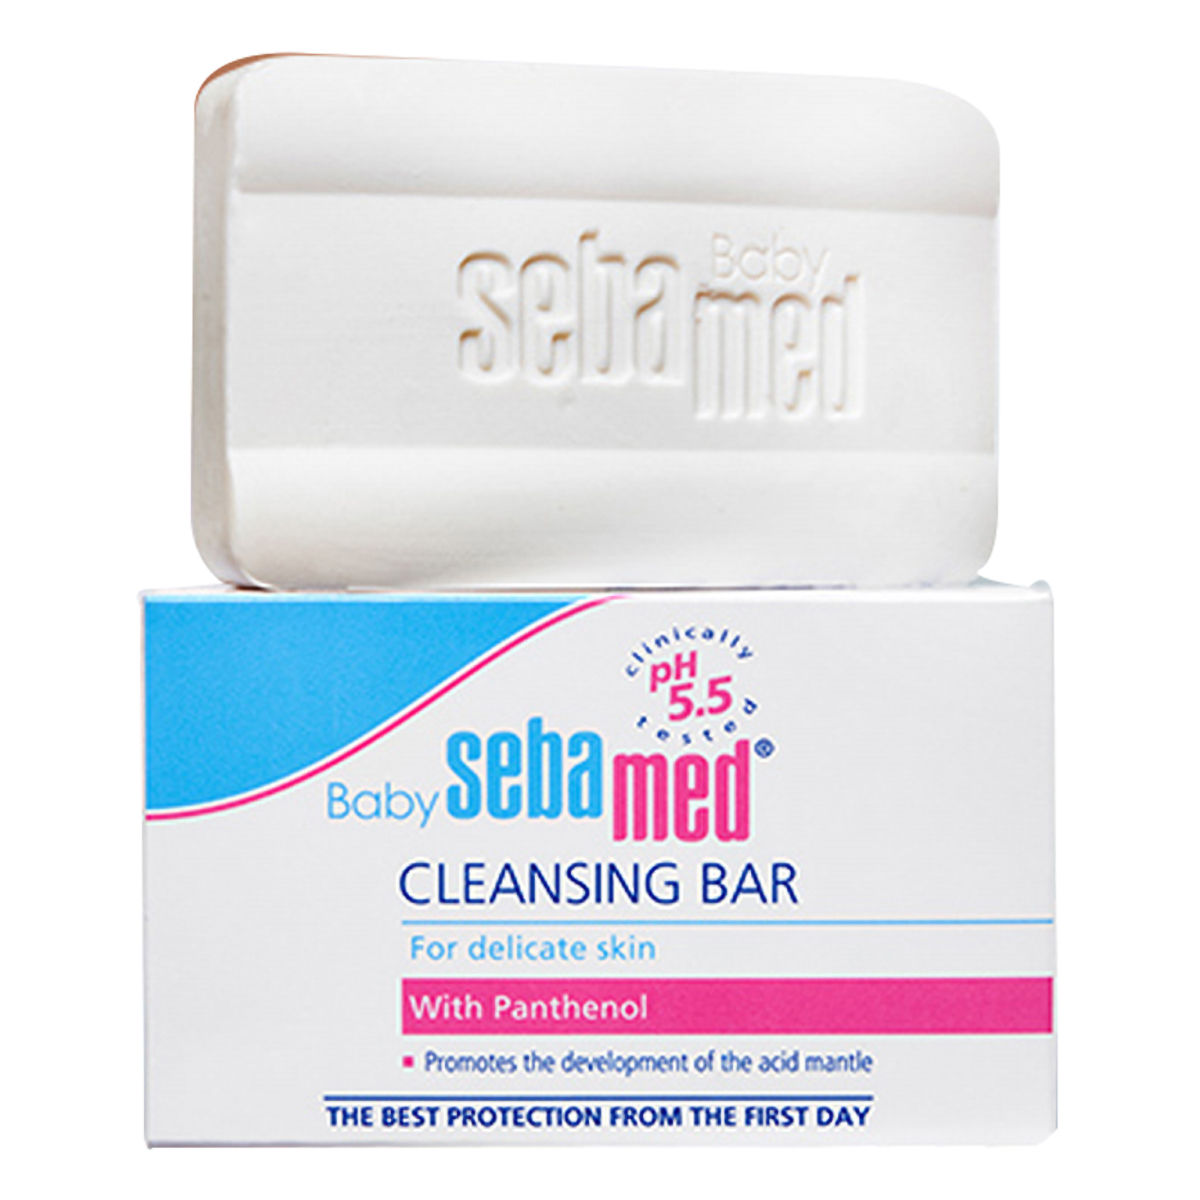 Buy Sebamed Baby Cleansing Bar, 150 gm Online